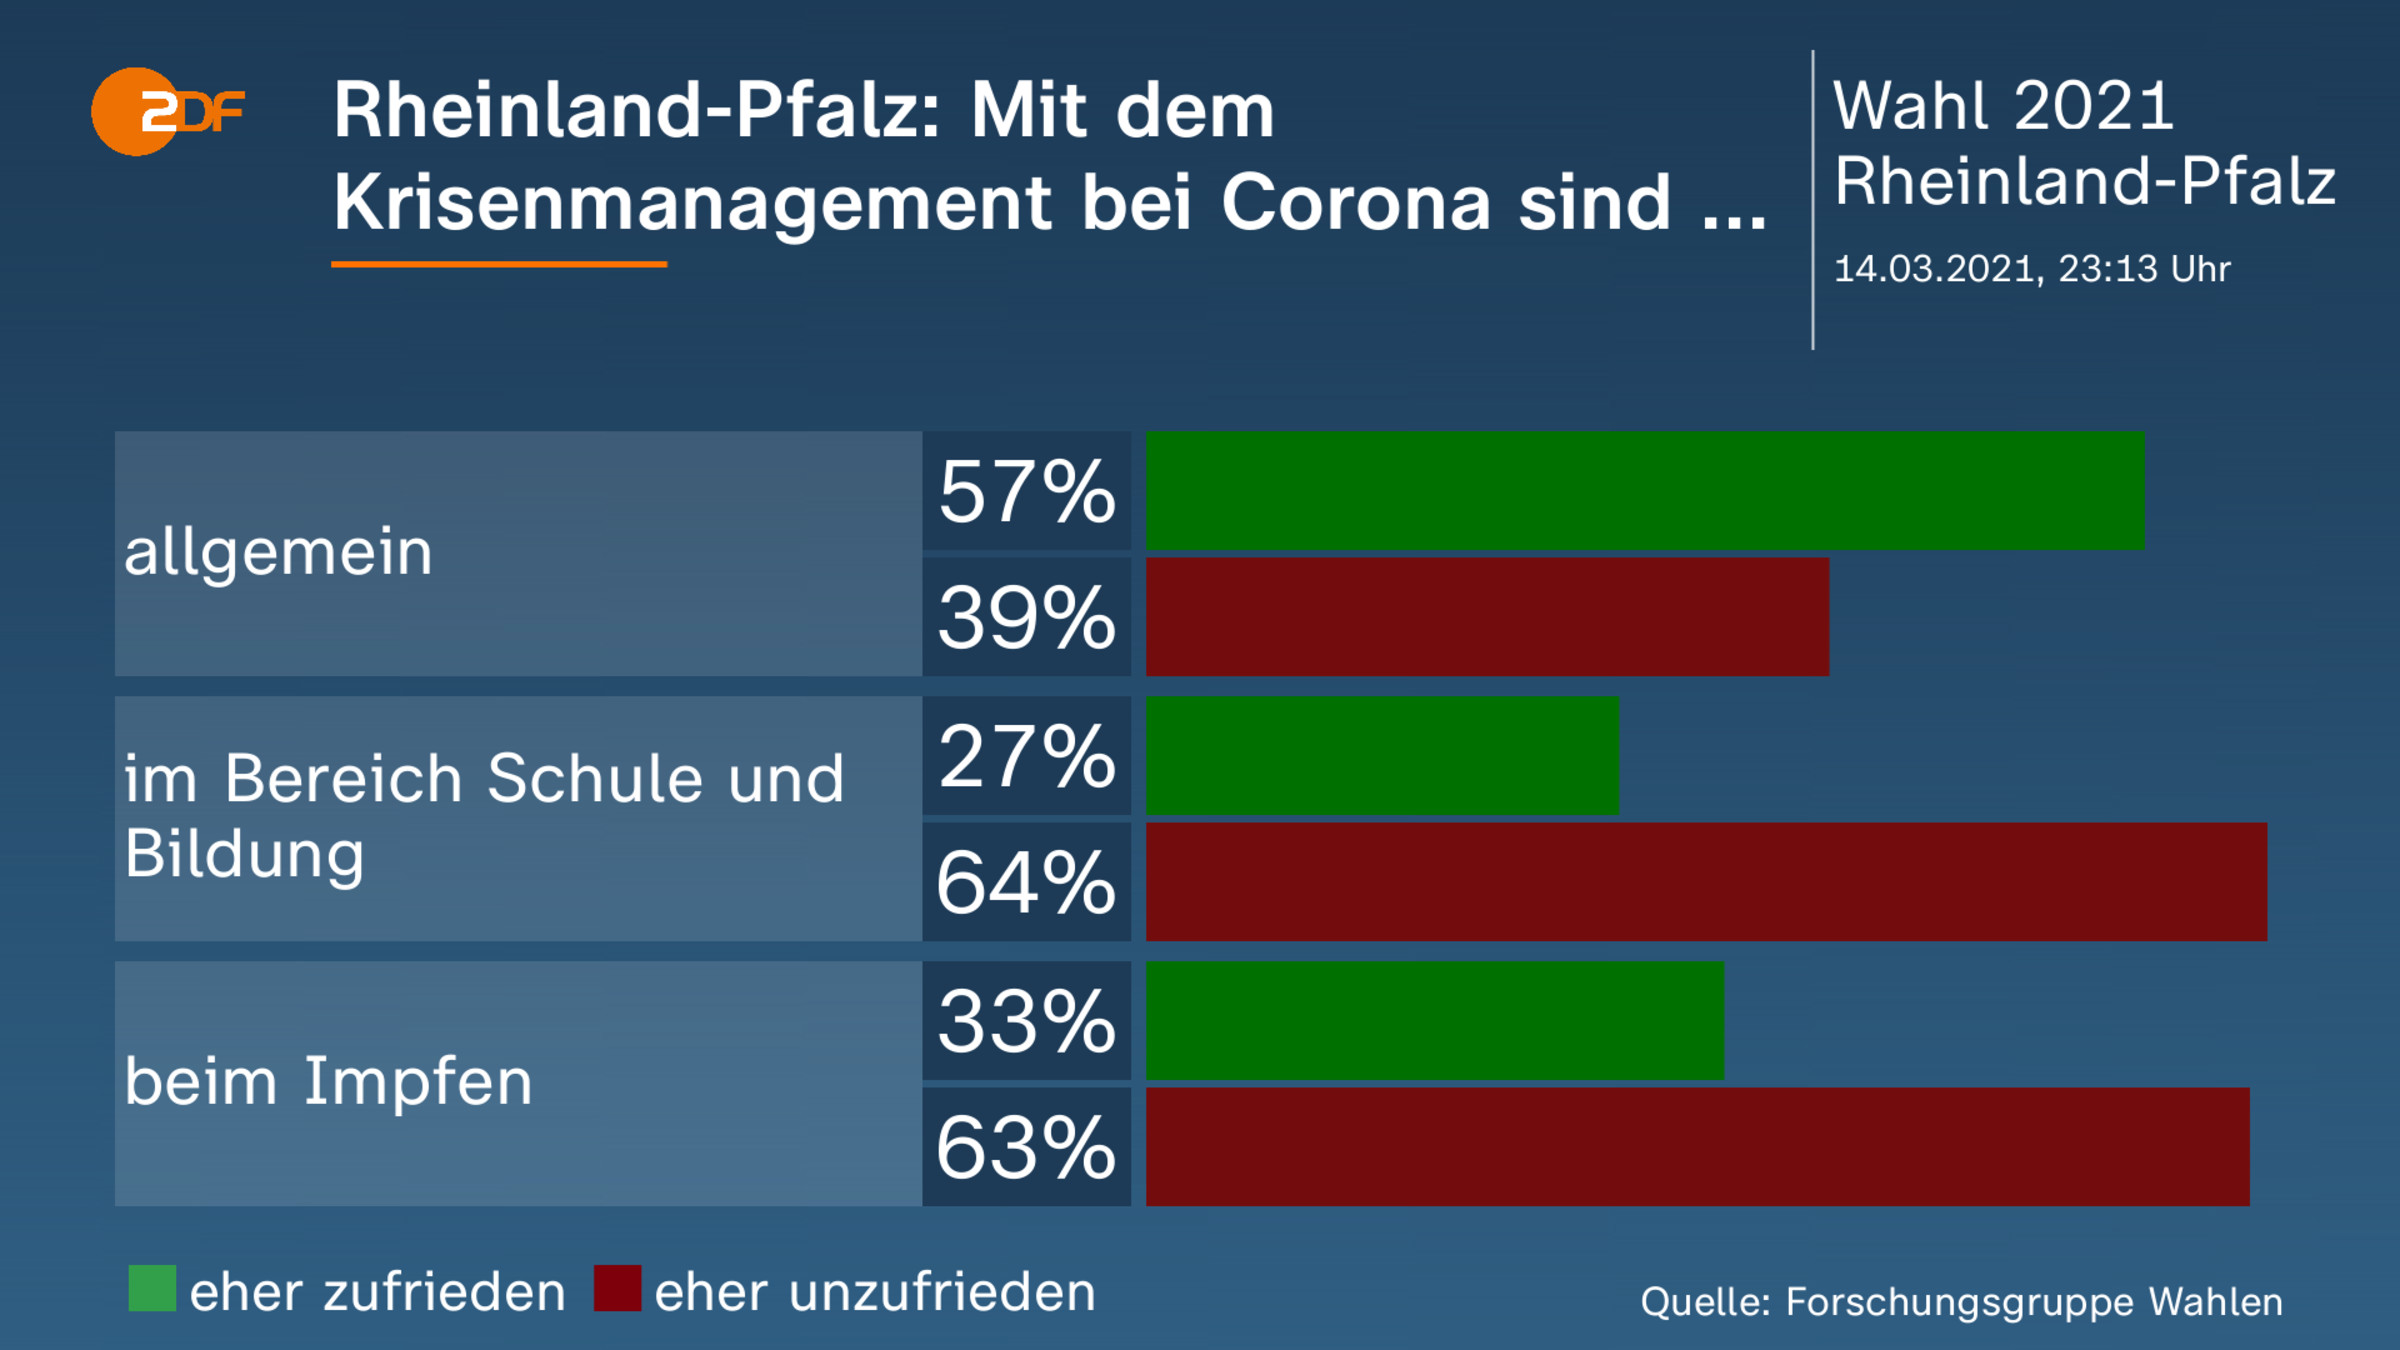 Rheinland-Pfalz: Mit dem Krisenmanagement bei Corona sind ... 